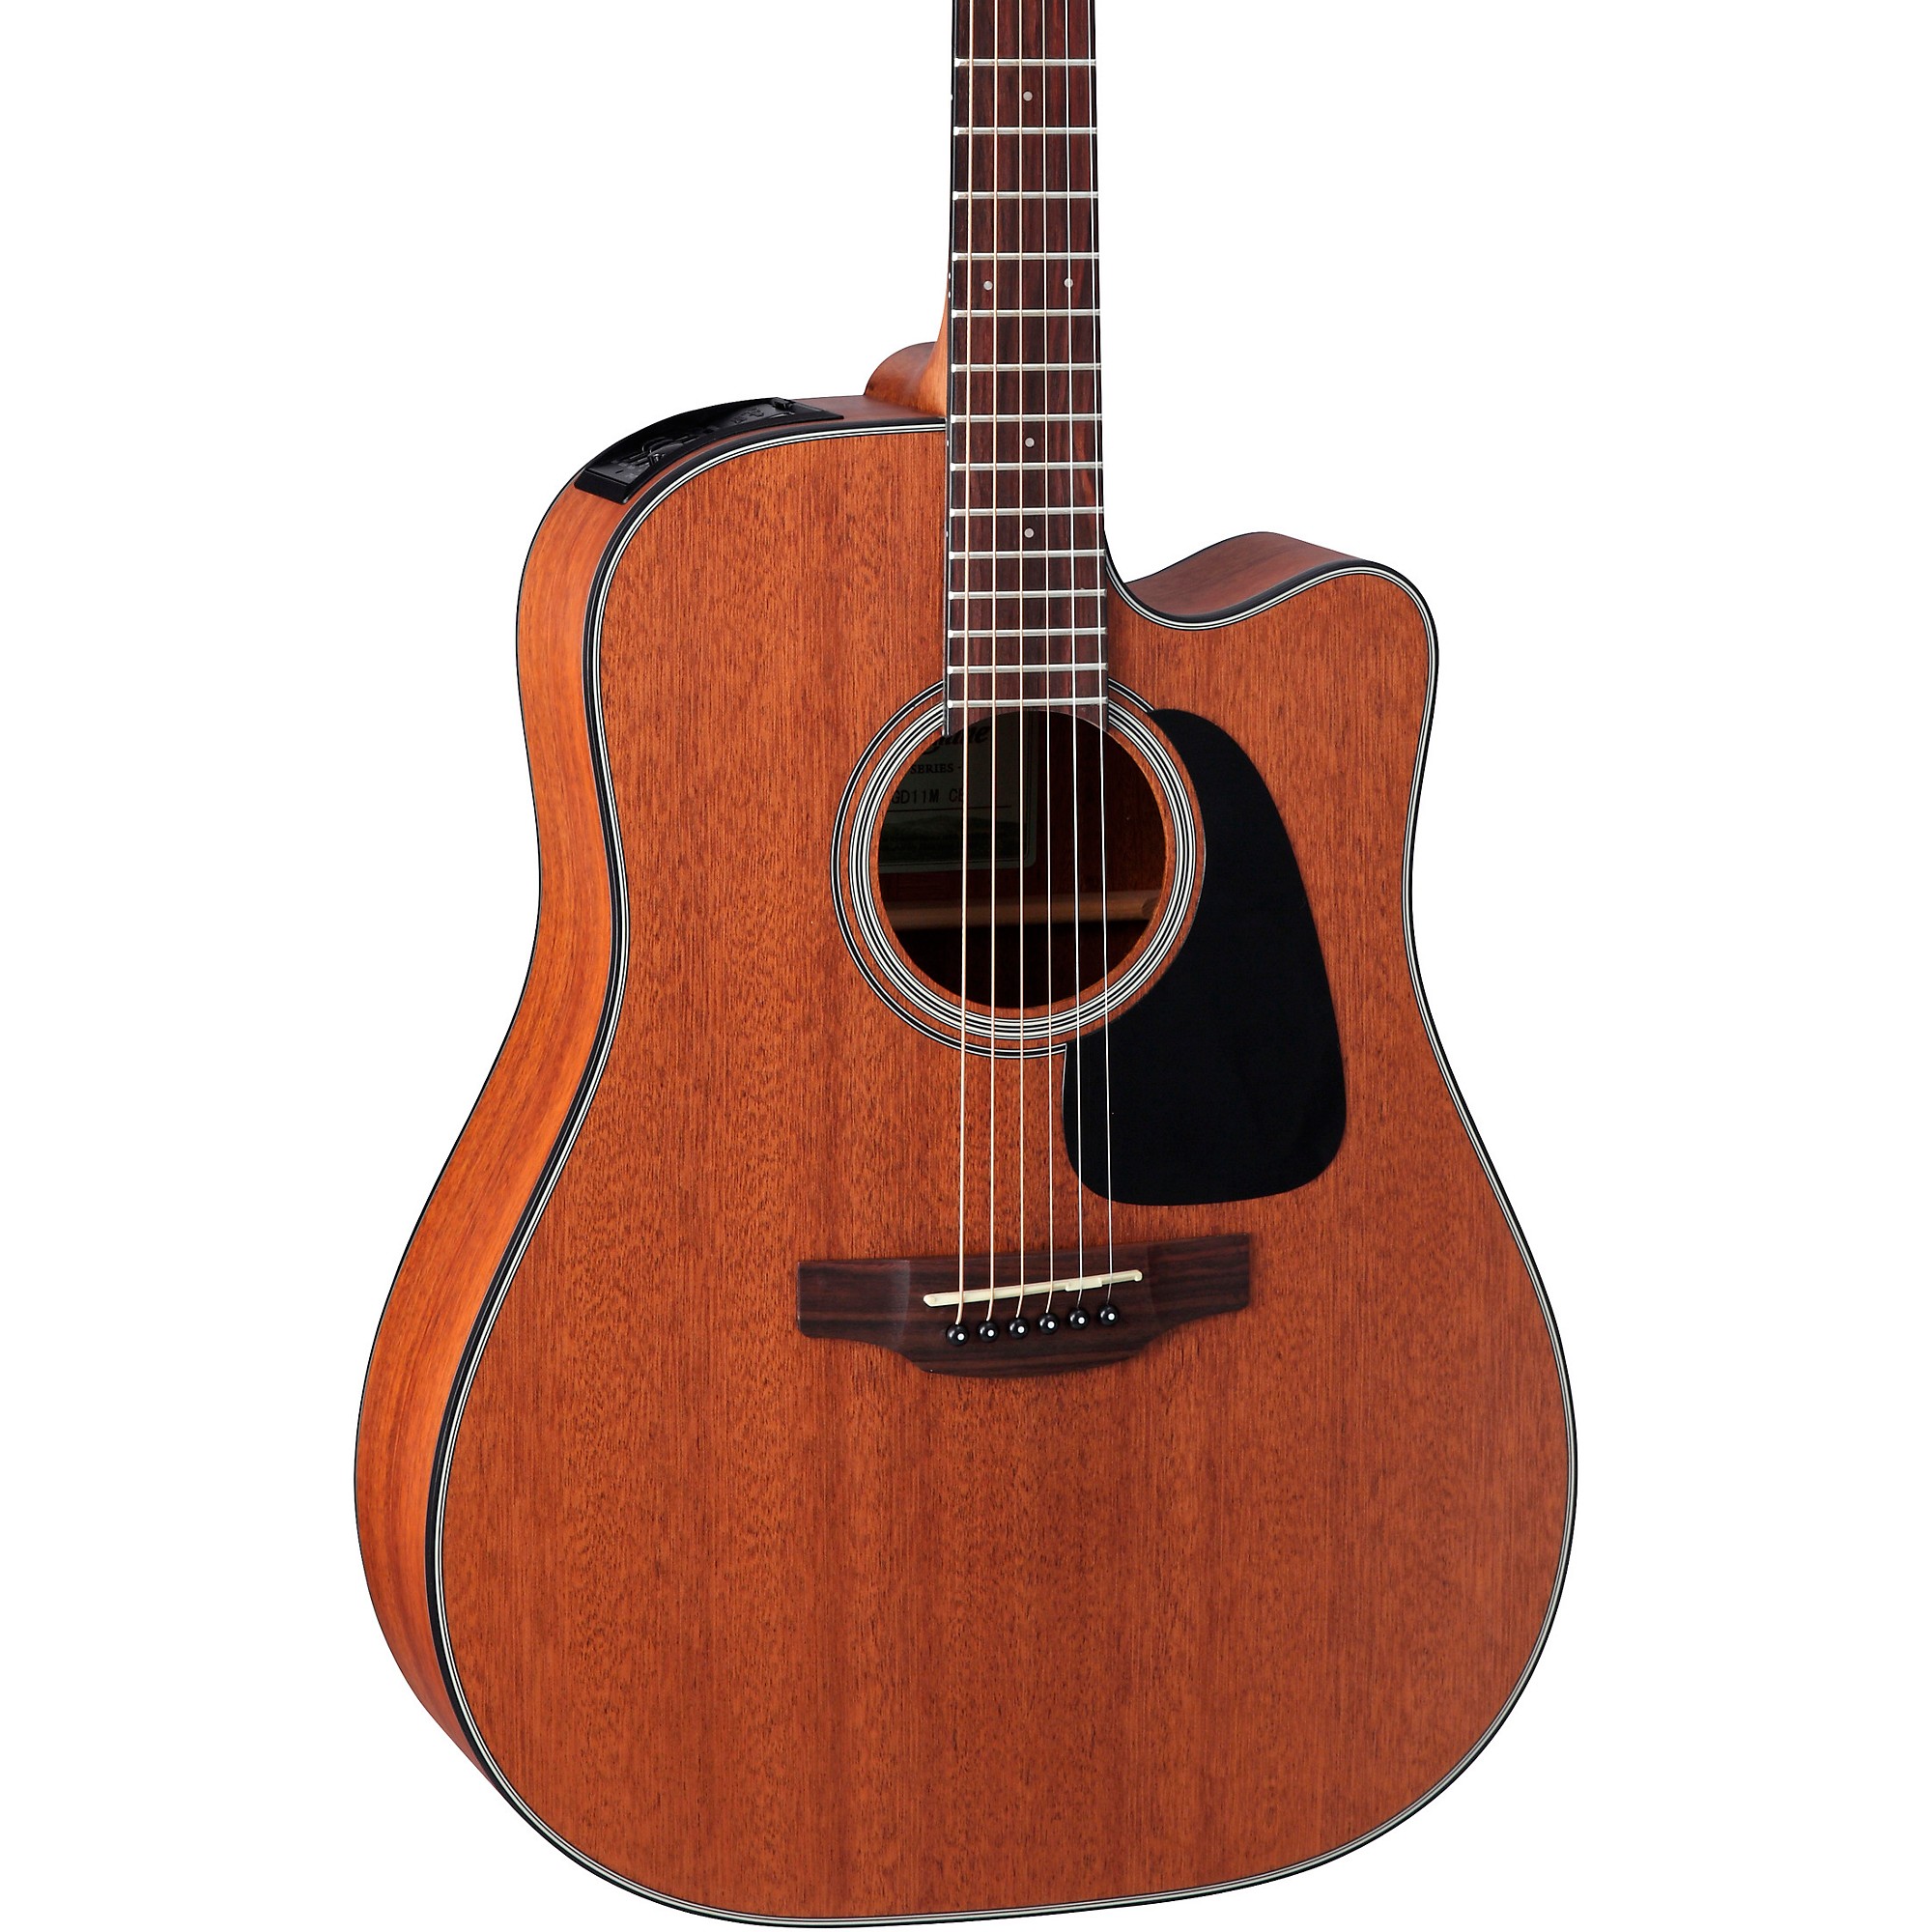 Takamine GD11Mce Акустически-электрическая гитара Satin Natural цена и фото